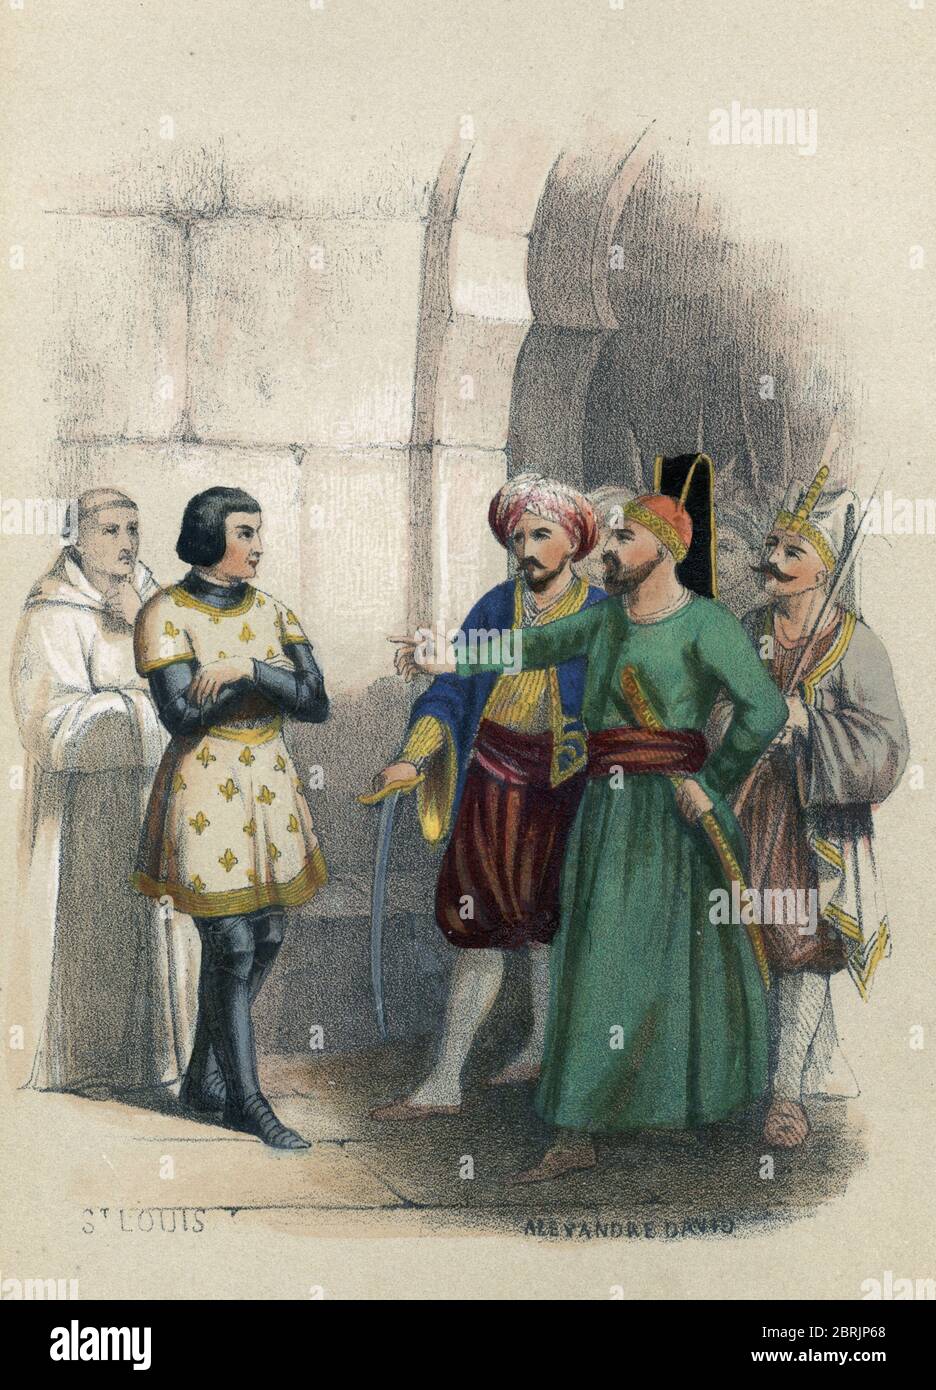 Septieme croisade : 'Representation du roi Louis IX (saint Louis) (1214-1270) face a six turcs cherchant a le faire prisonnier, 1249' (King Louis IX f Stock Photo